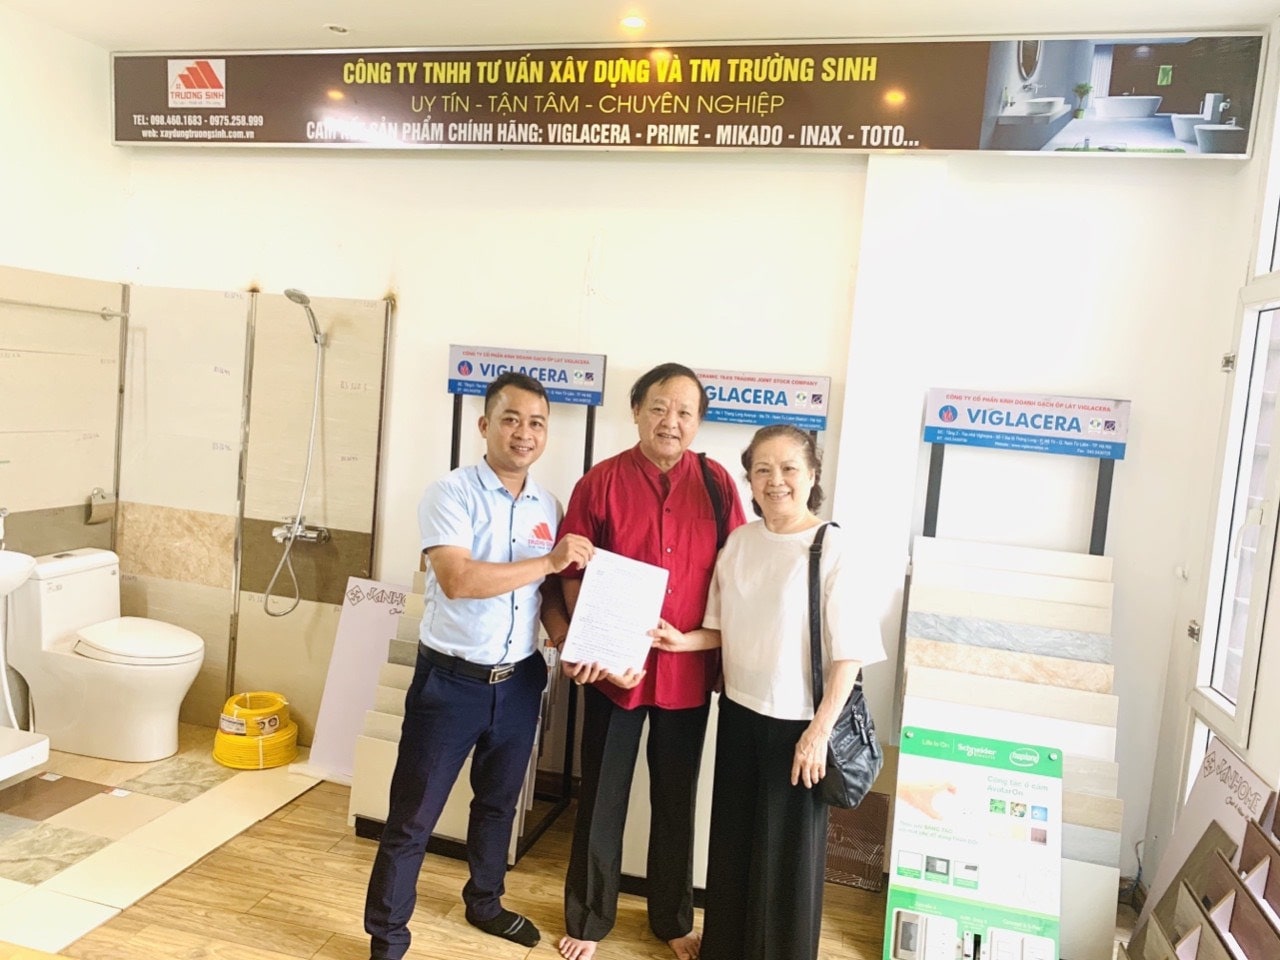 Dự án sửa nhà trọn gói cho bác Phương tại Ba Đình Hà Nội năm 2020